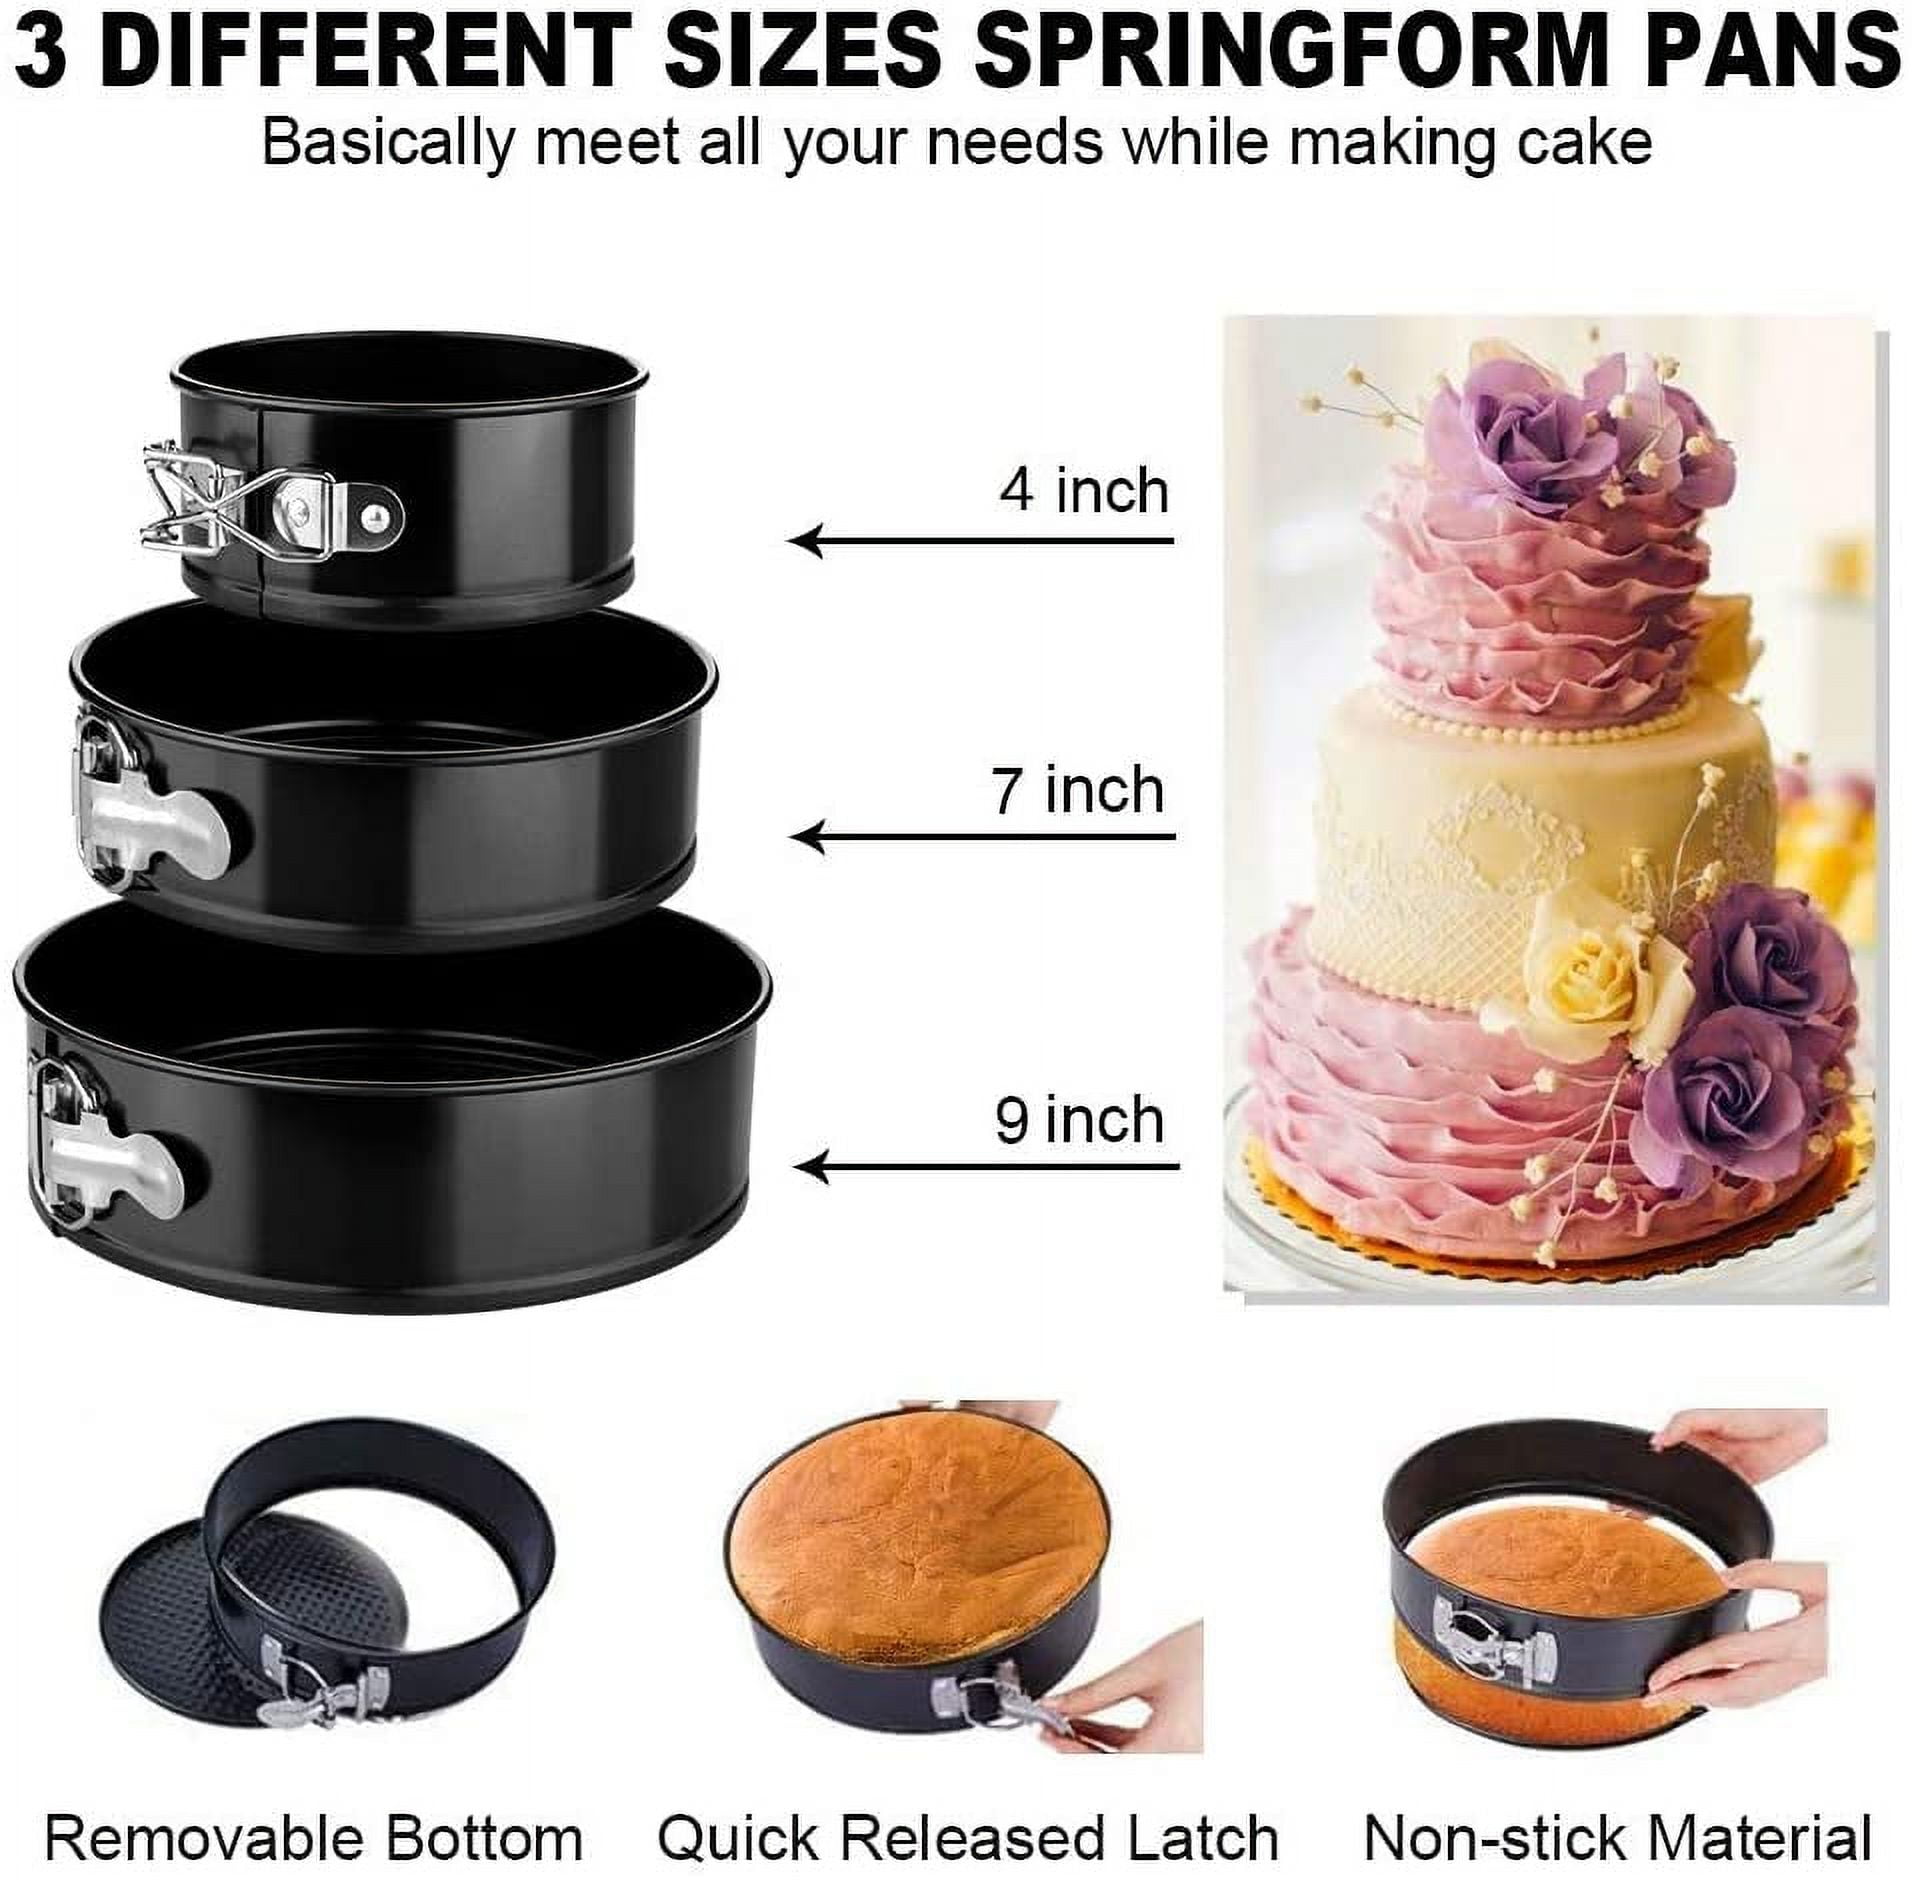  Cake Decorating Supplies Tools Kit: 358pcs Baking